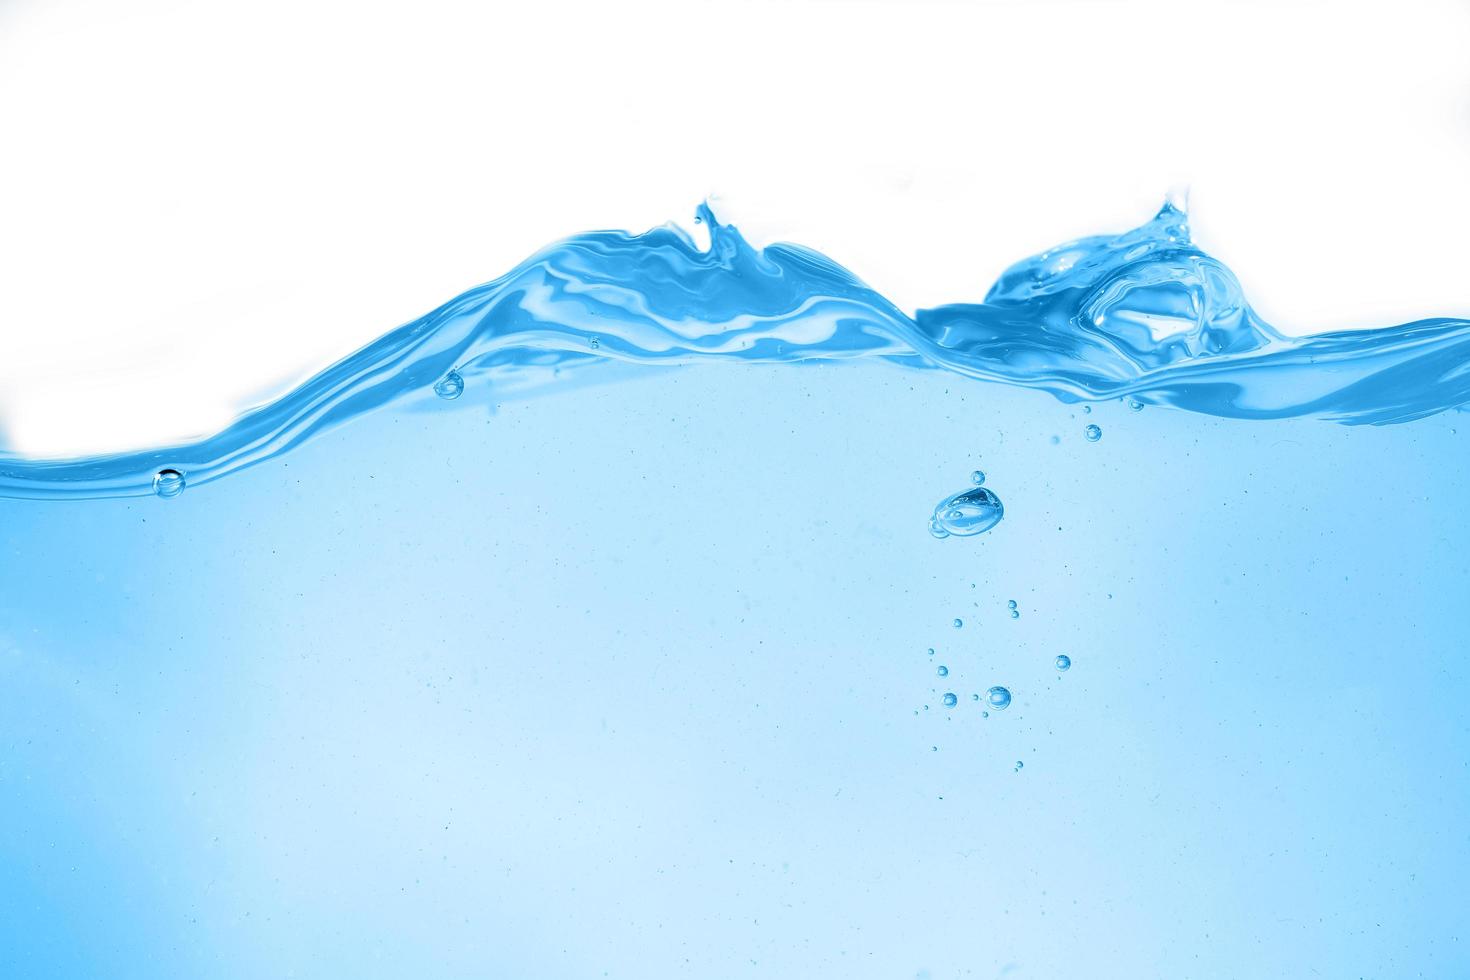 blå ytvatten och luftbubbla isolerad på vit bakgrund foto